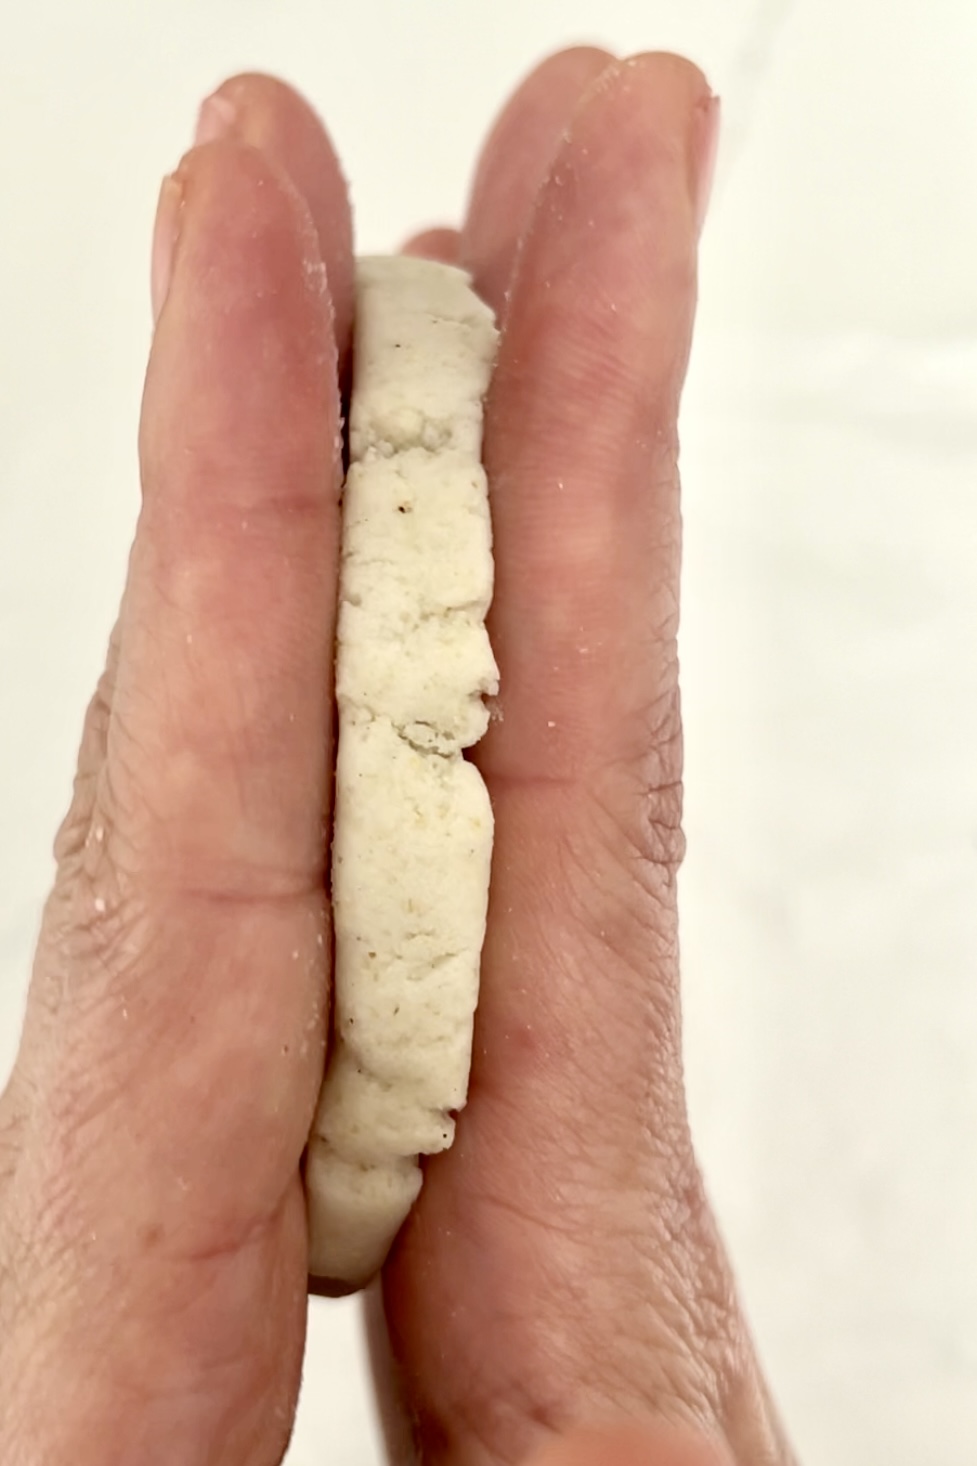 Una mano que sostiene un sope pequeños, redondos y blancos entre dos dedos.